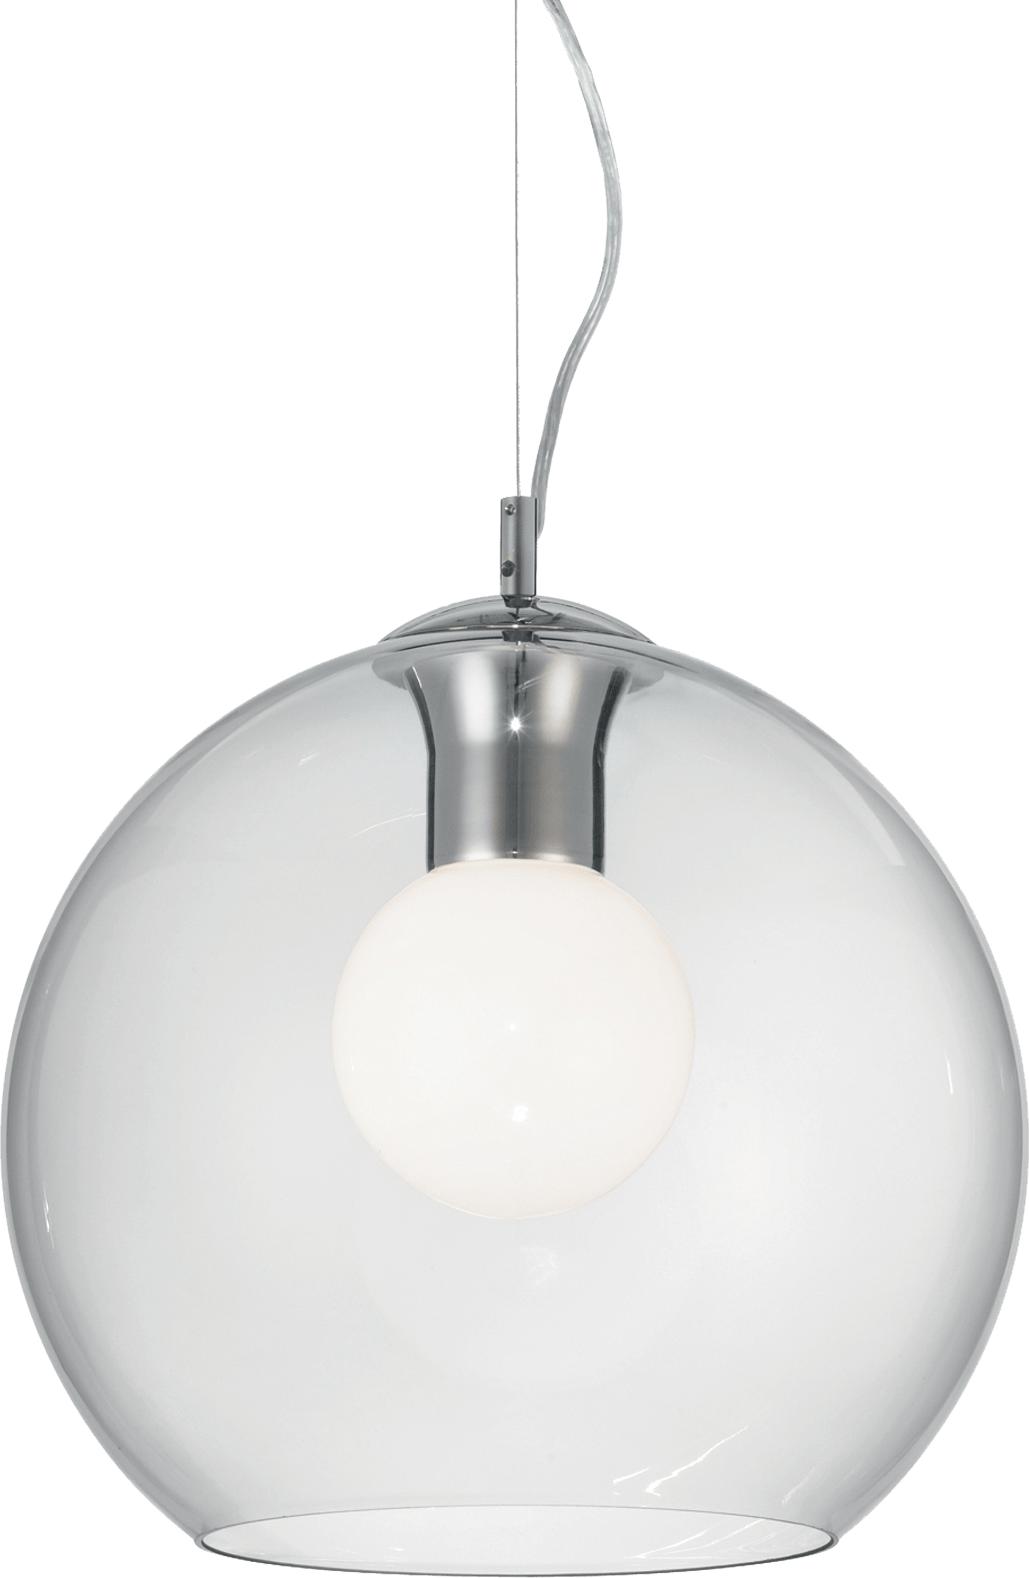 Ideal lux LED Nemo clear d30 haengende Lampe 5W 52809